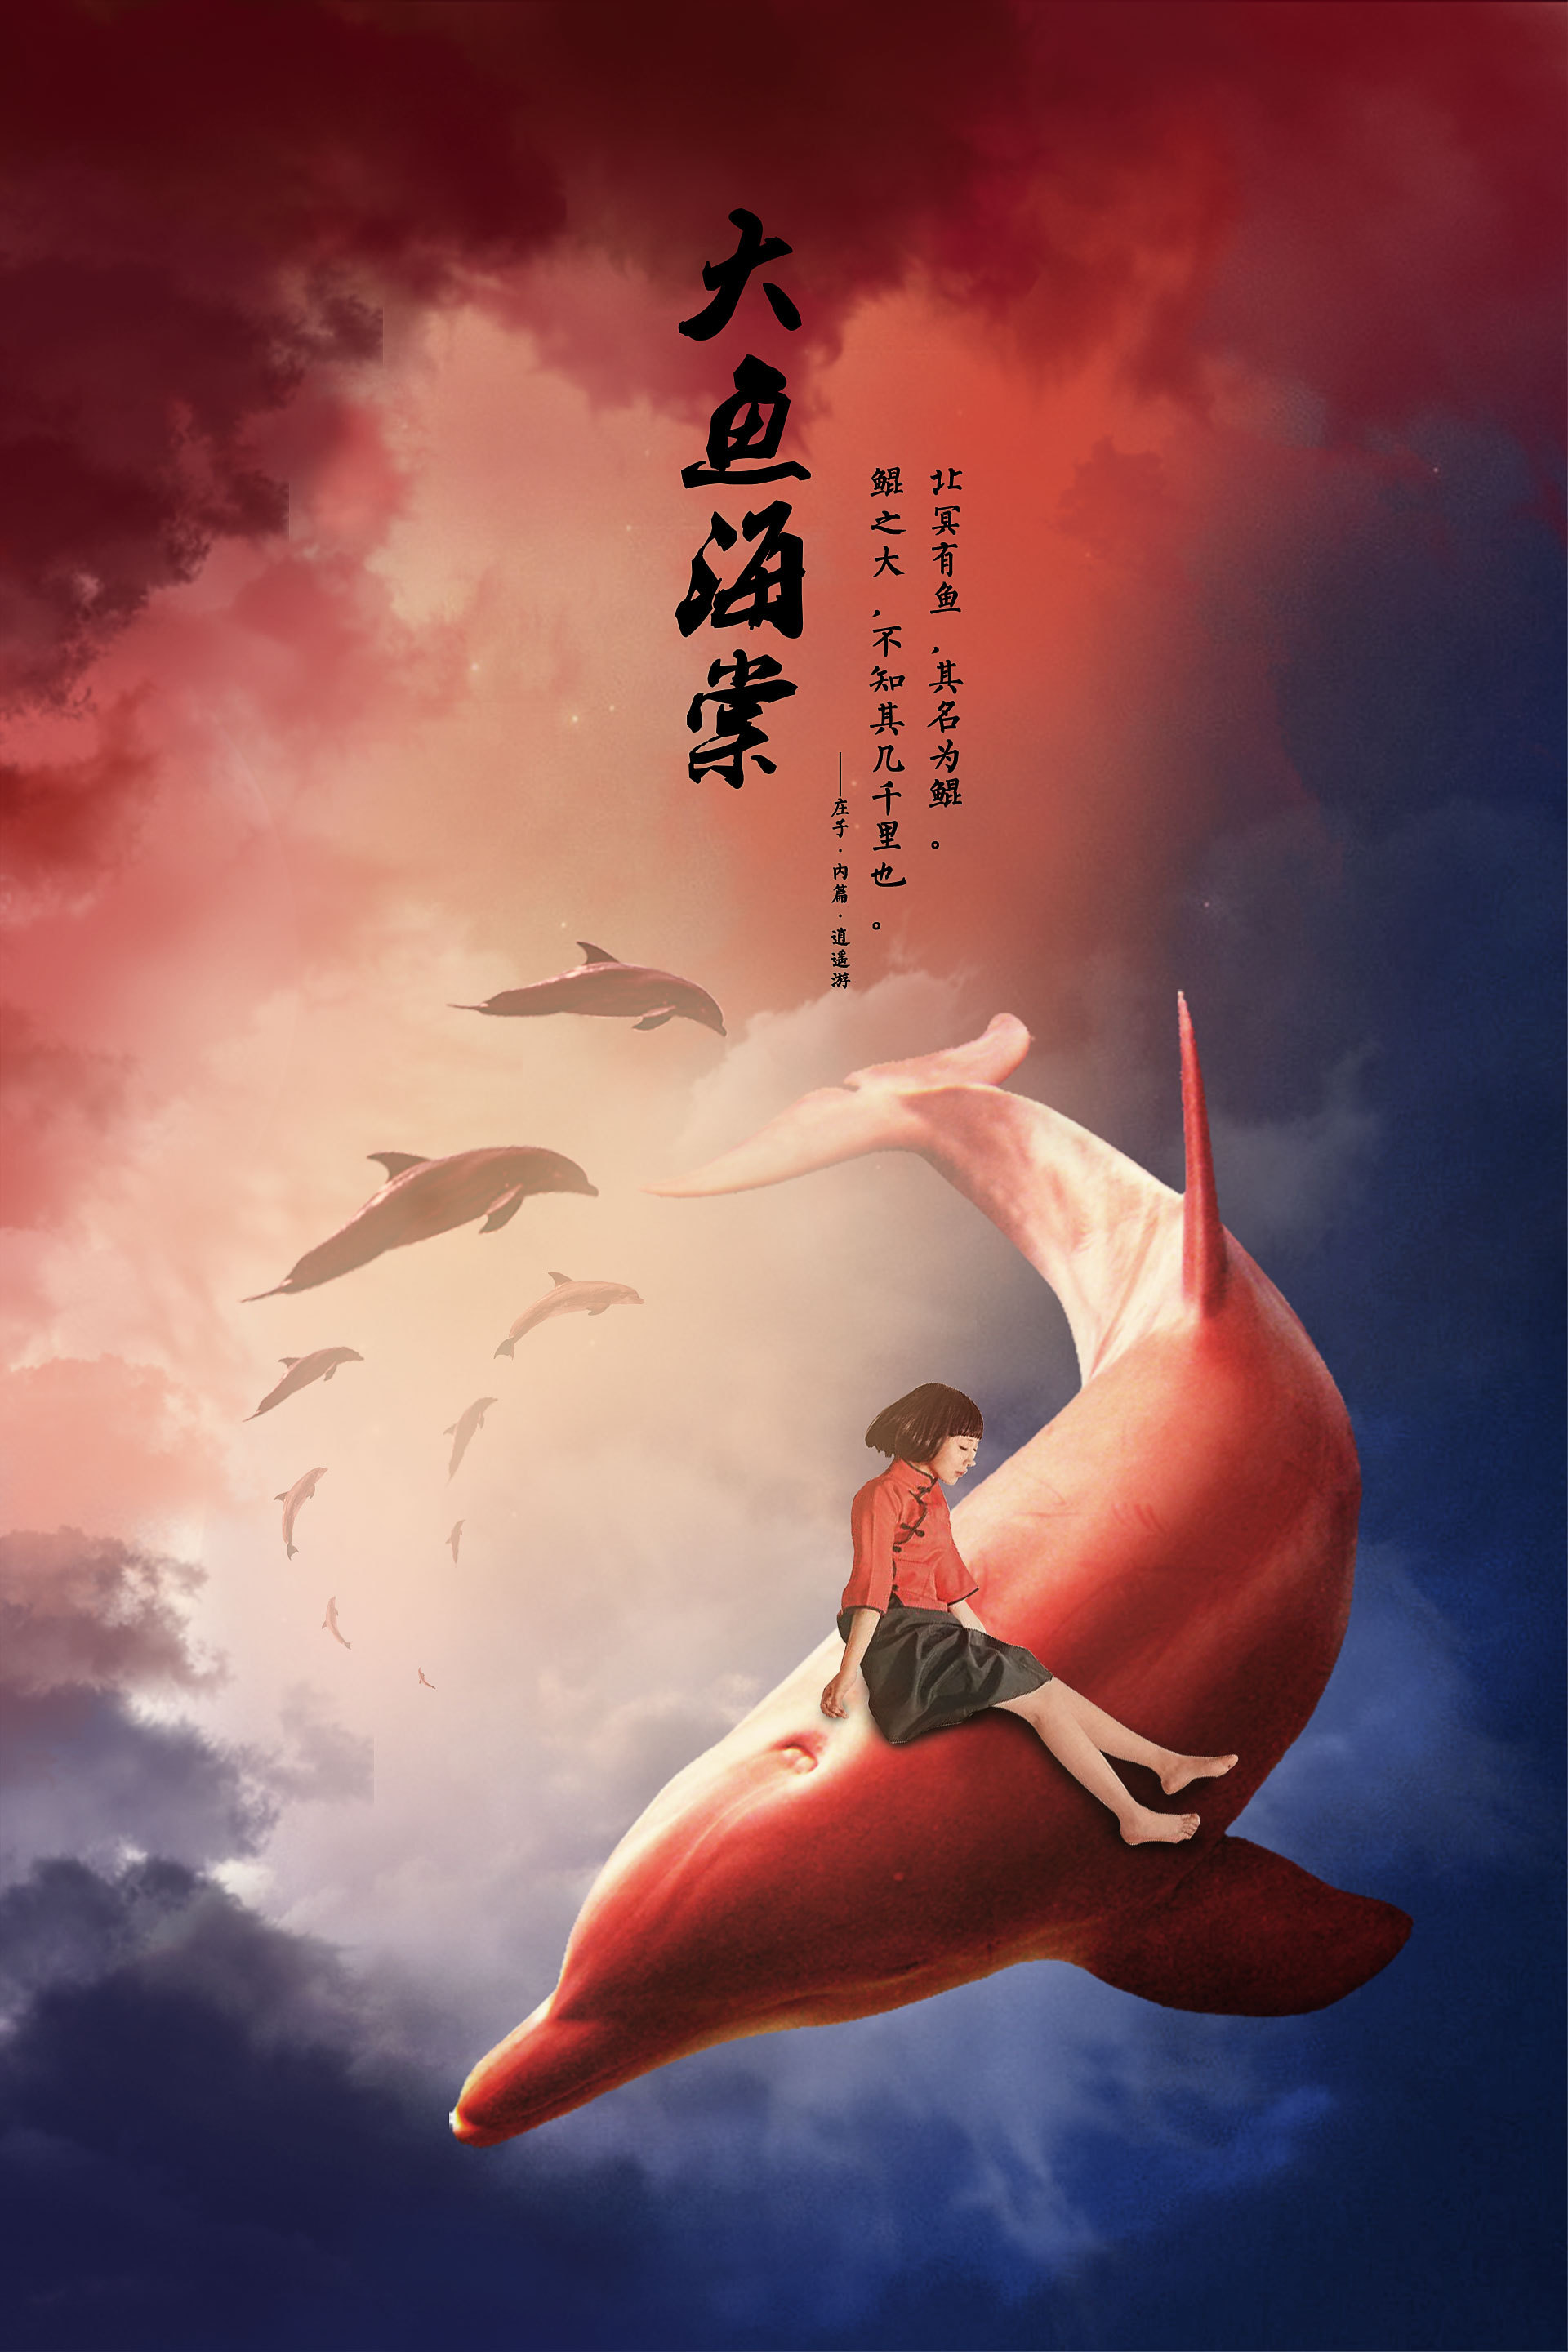 大鱼海棠可以说是国内近几年最棒的动画电影,影片中满满的中国风,以及